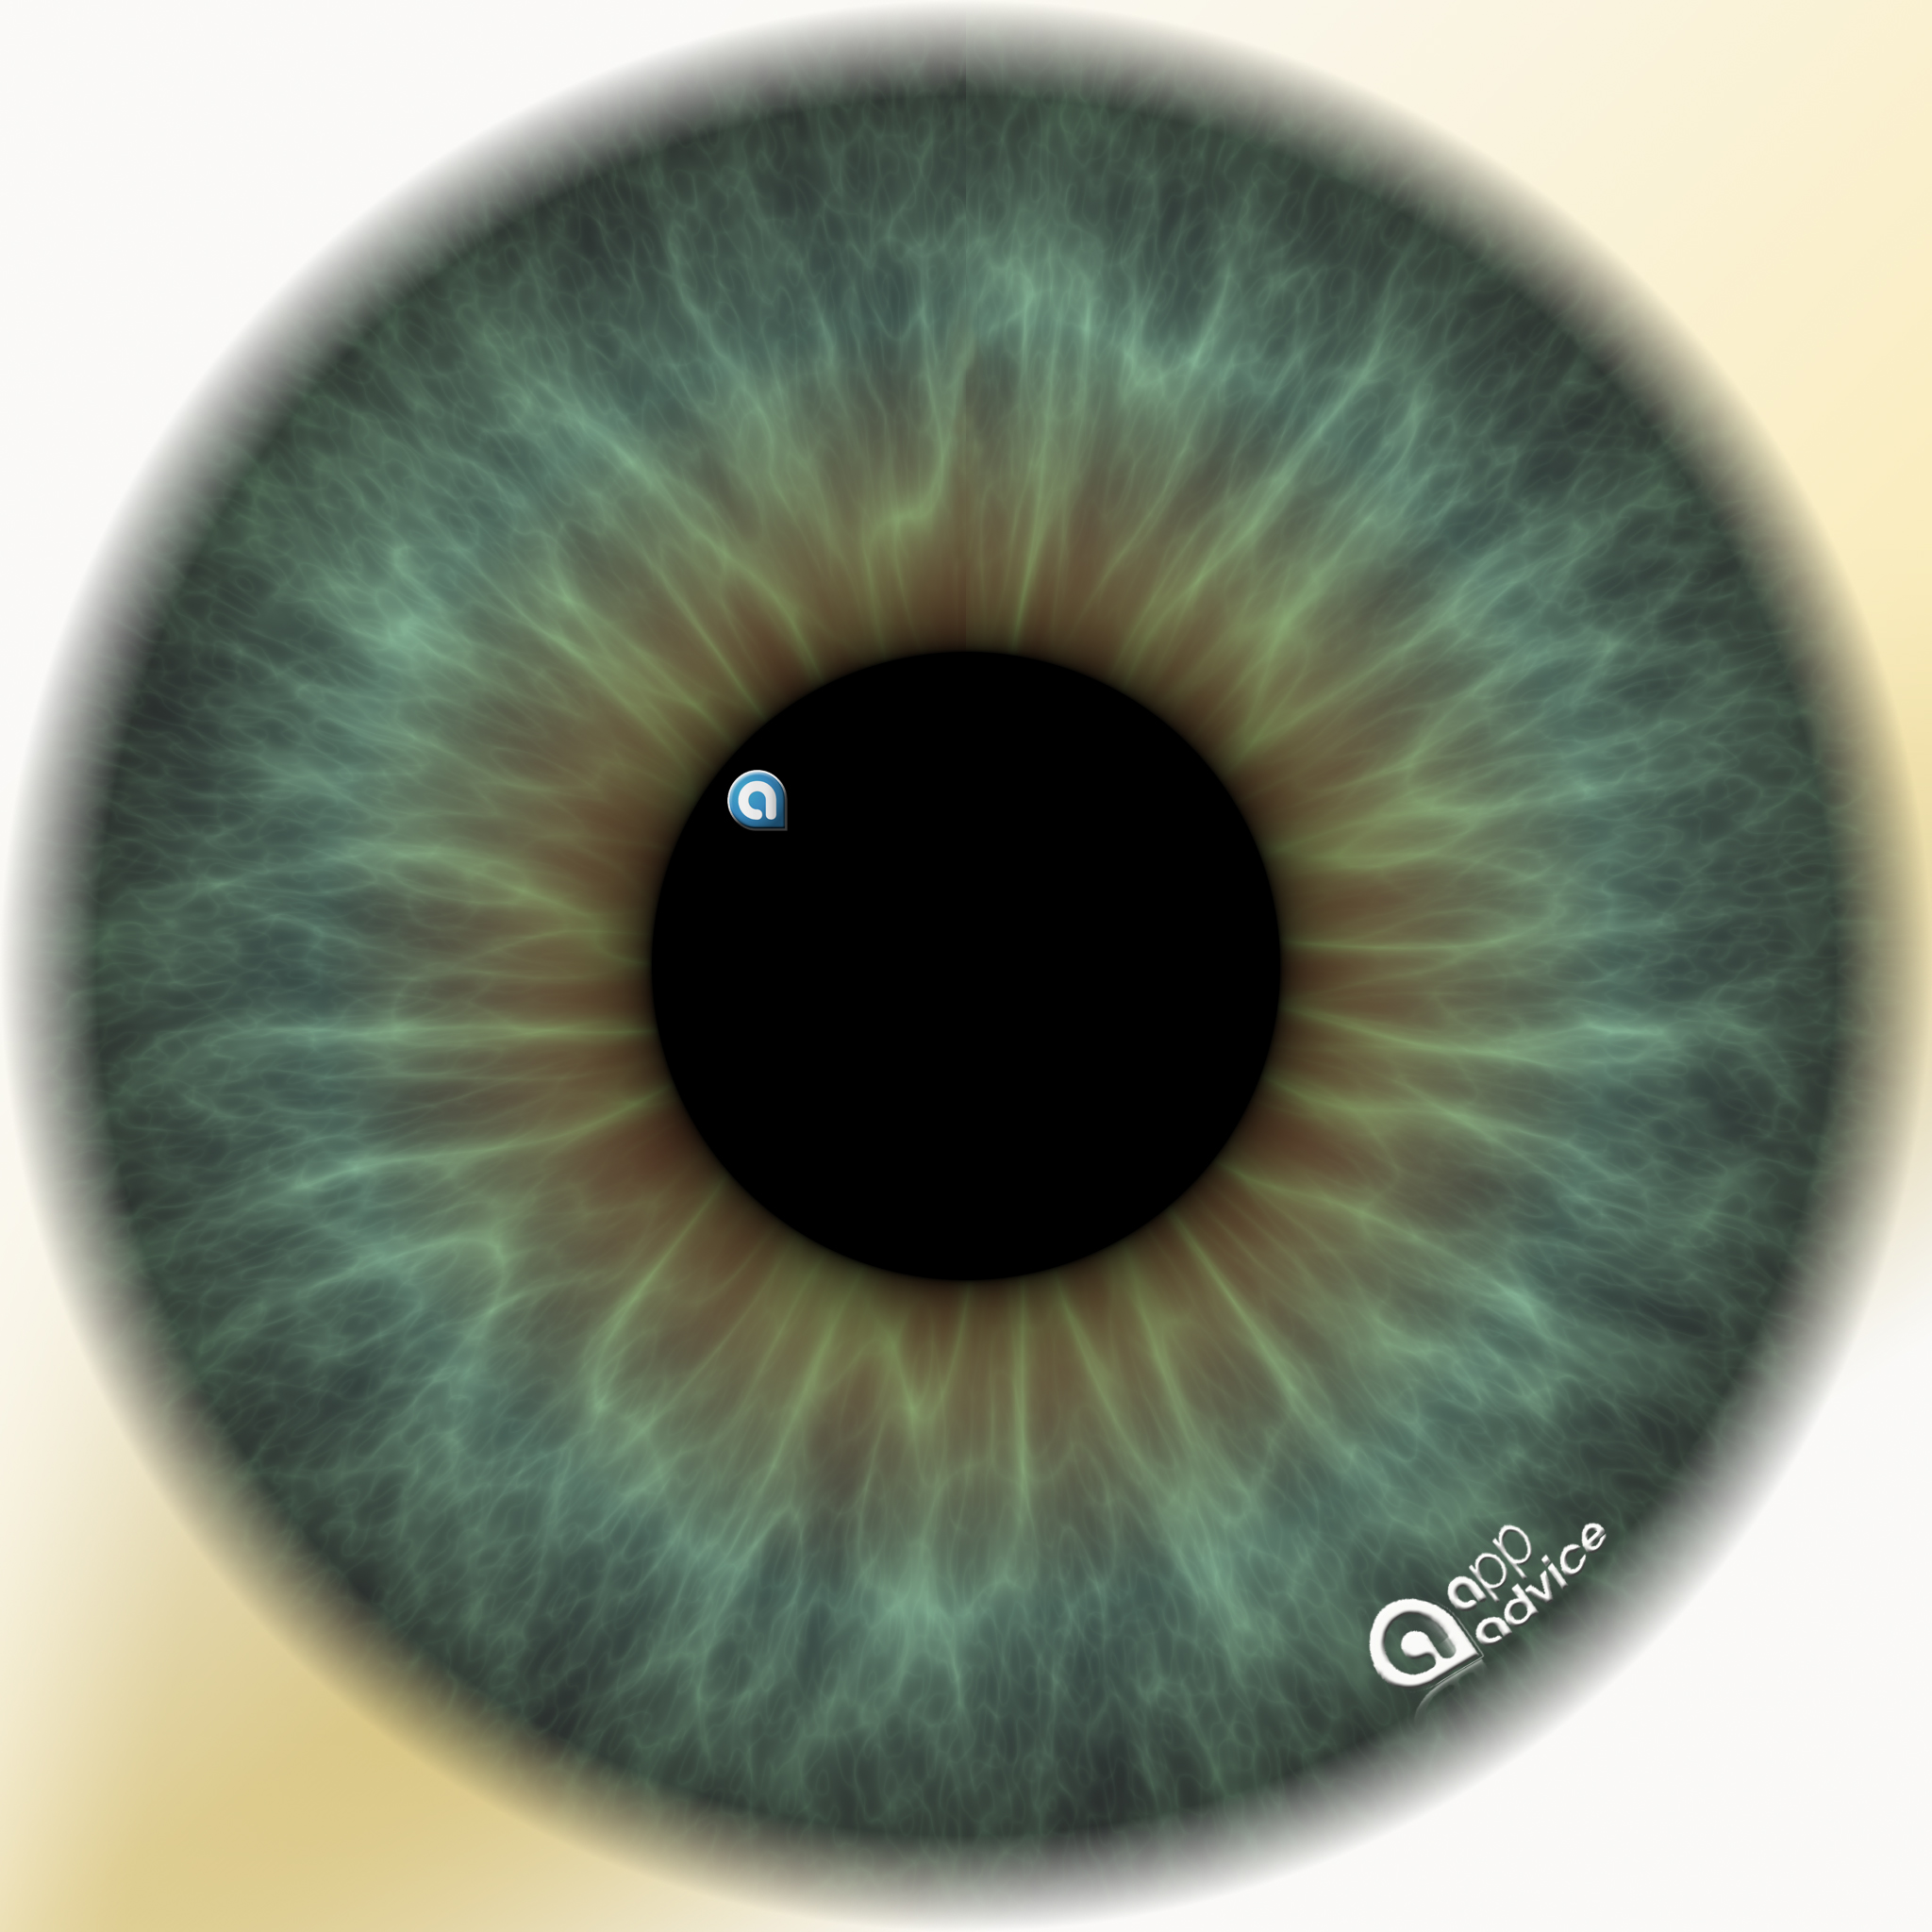 retina wallpaper, iris, eye, organ, close up, blue, eyelash, human body, circle, ophthalmology